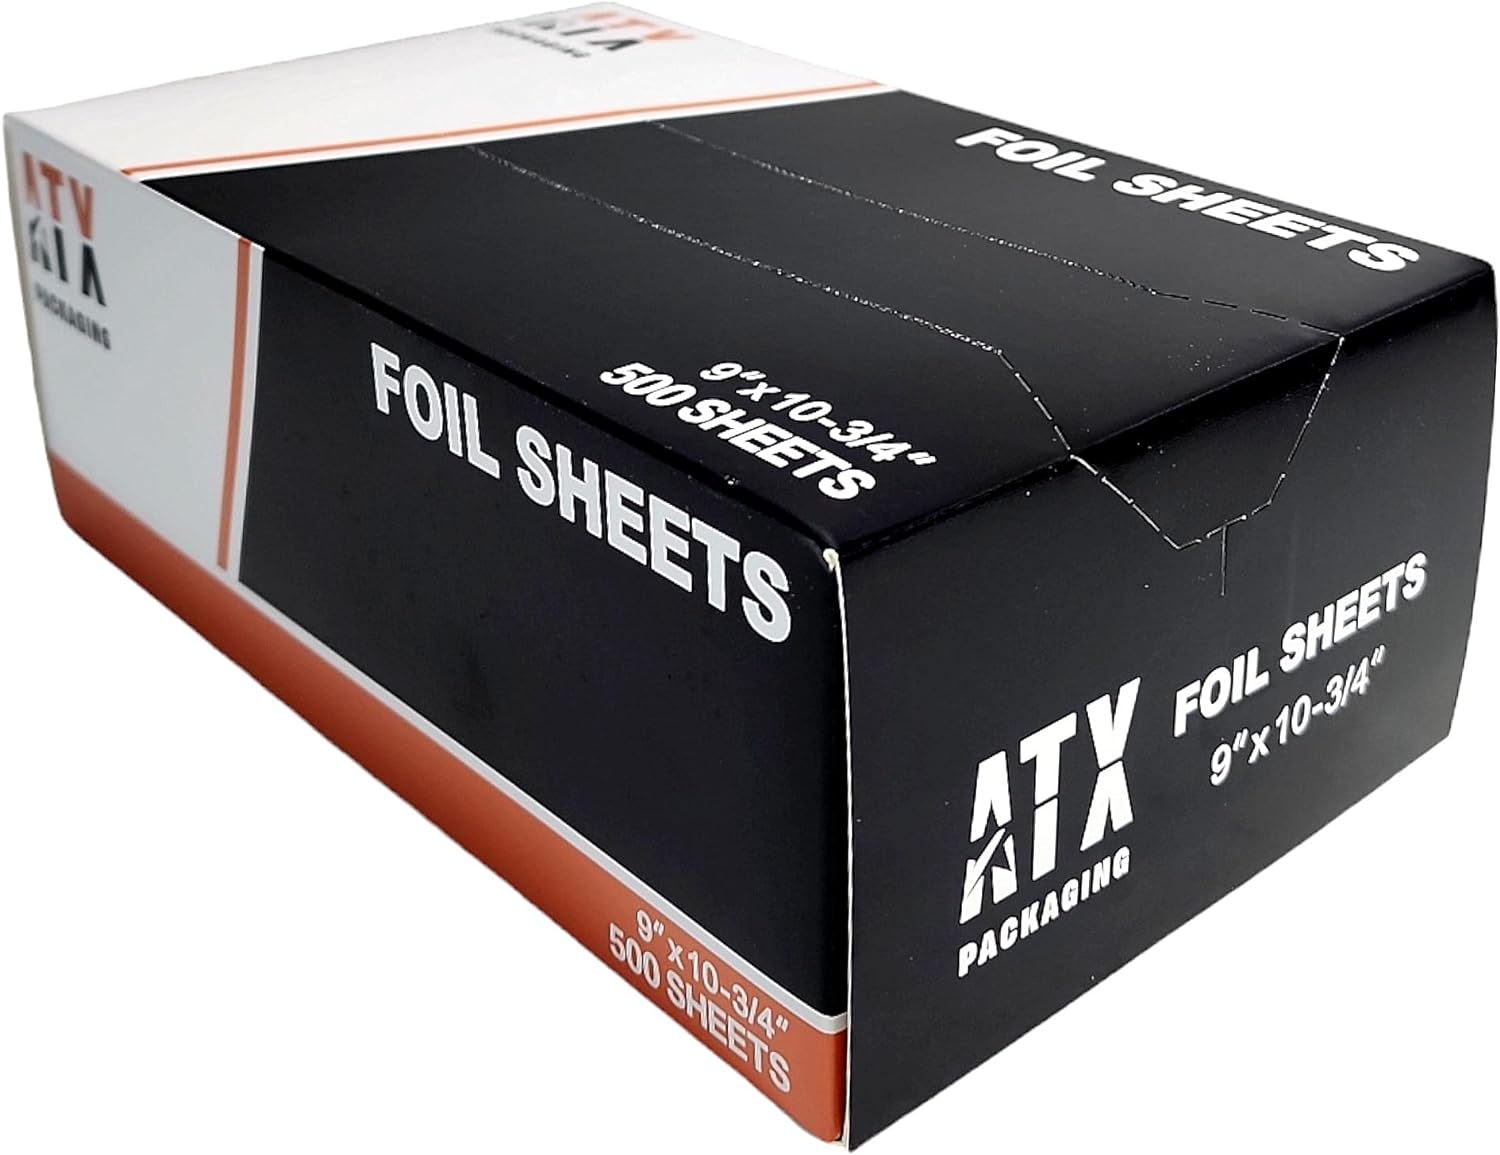 Premium Pre-cut Aluminum Foil Sheets 12 X 10-3/4 